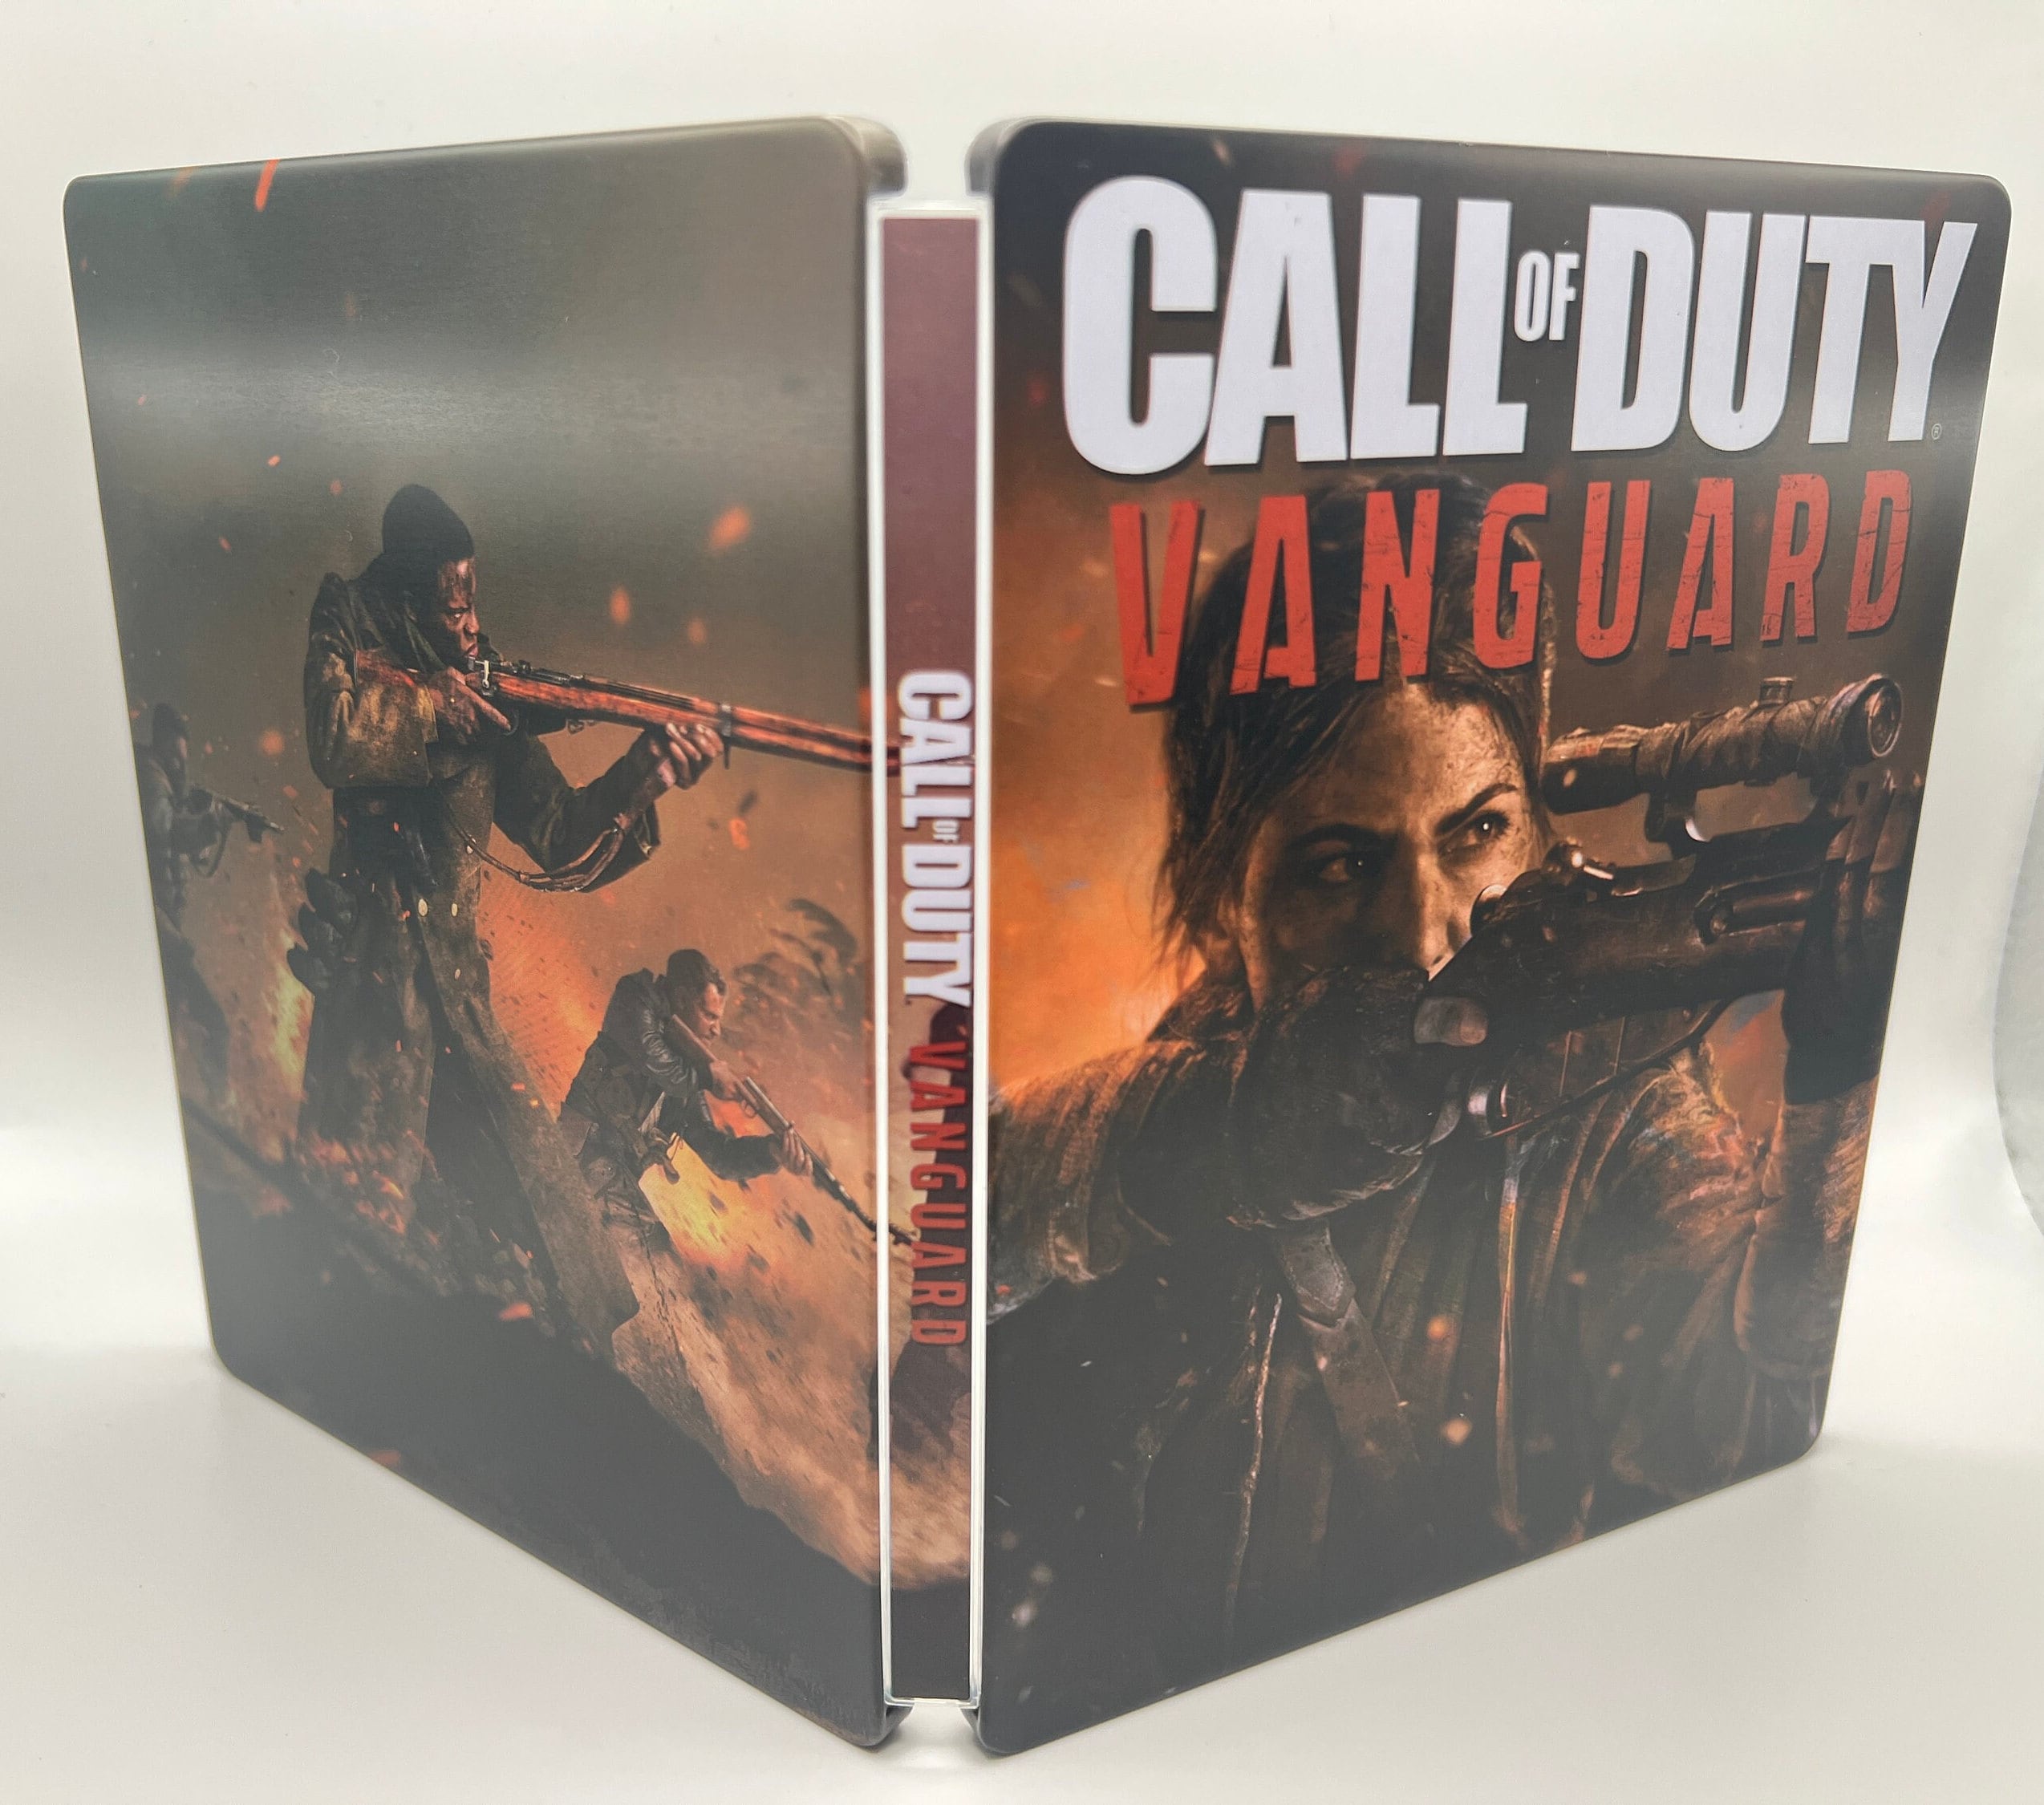 CoD Vanguard Review - A Mixed Bag